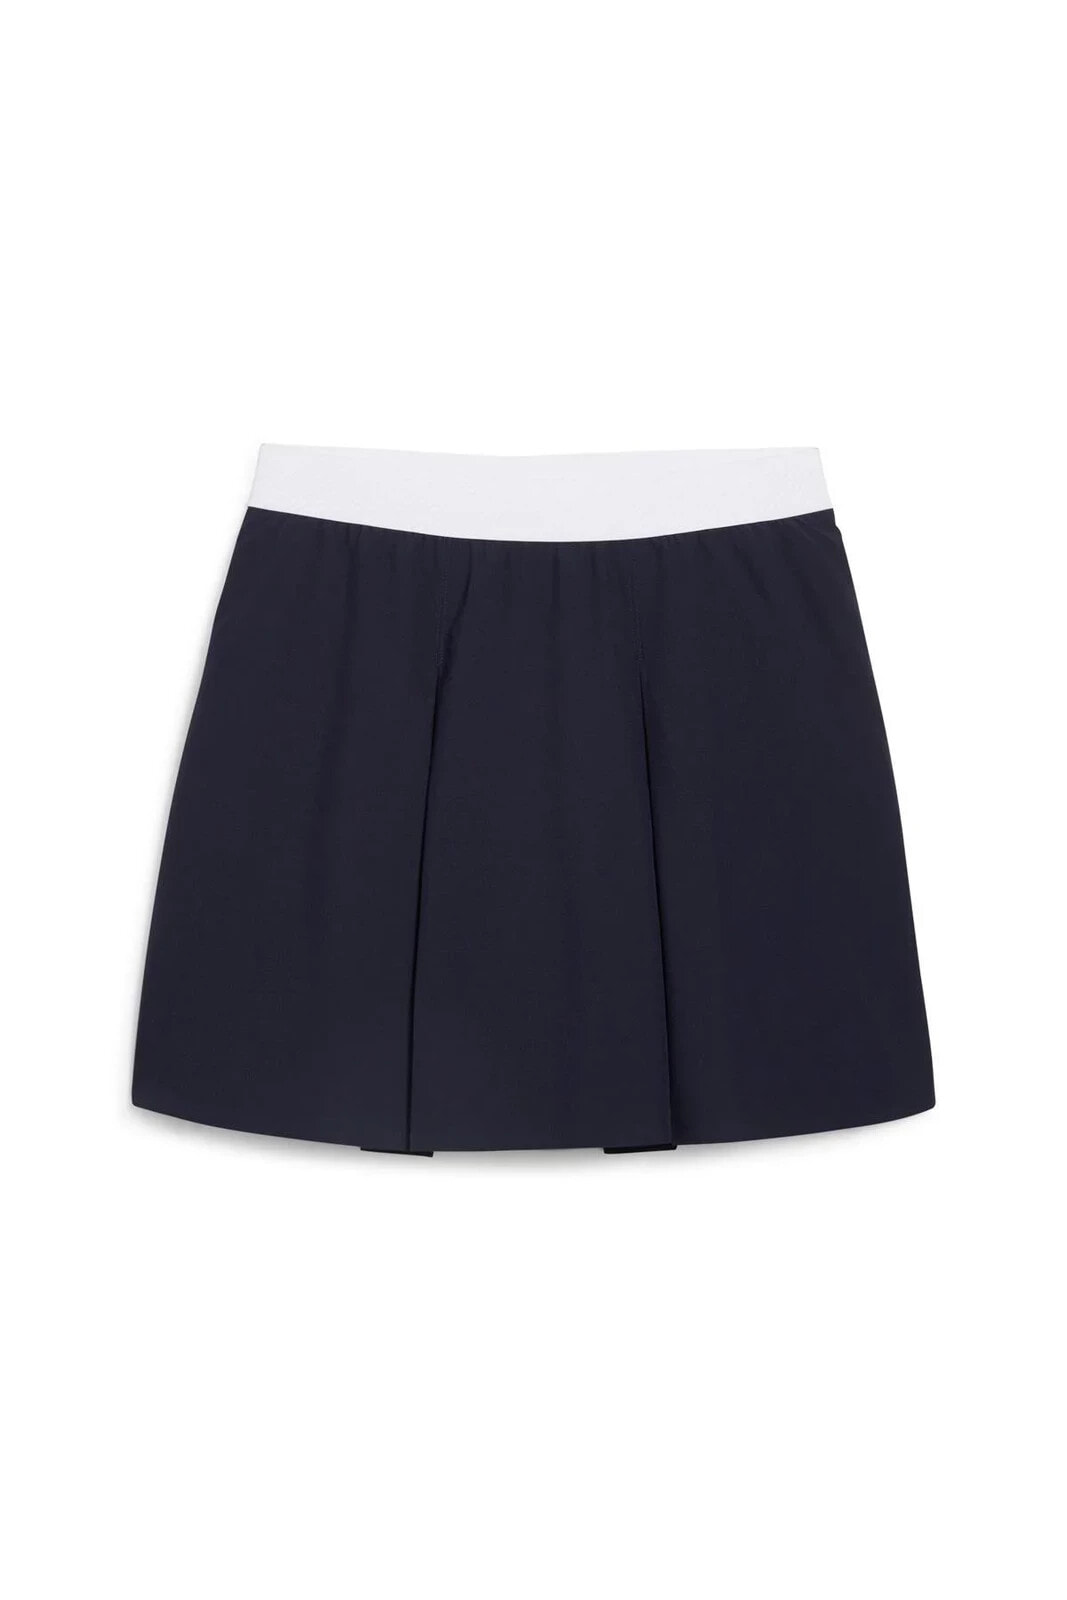 Pleated Skirt / Kadın Pileli Şortlu Etek